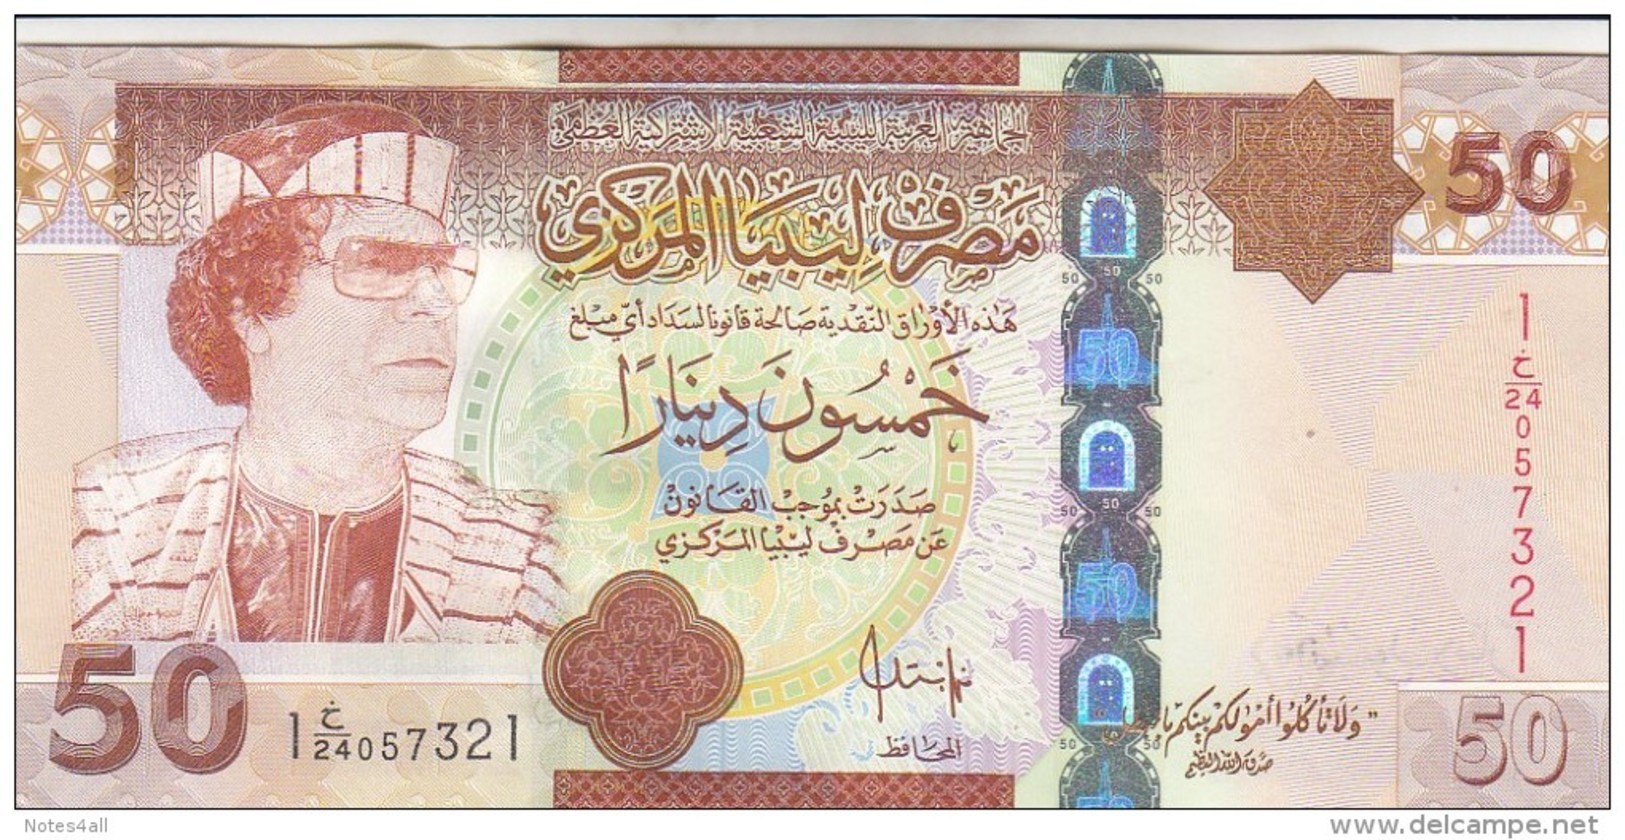 LIBYA 50 DINARS 2008 2009 P-75 GADDAFI UNC */* - Libya